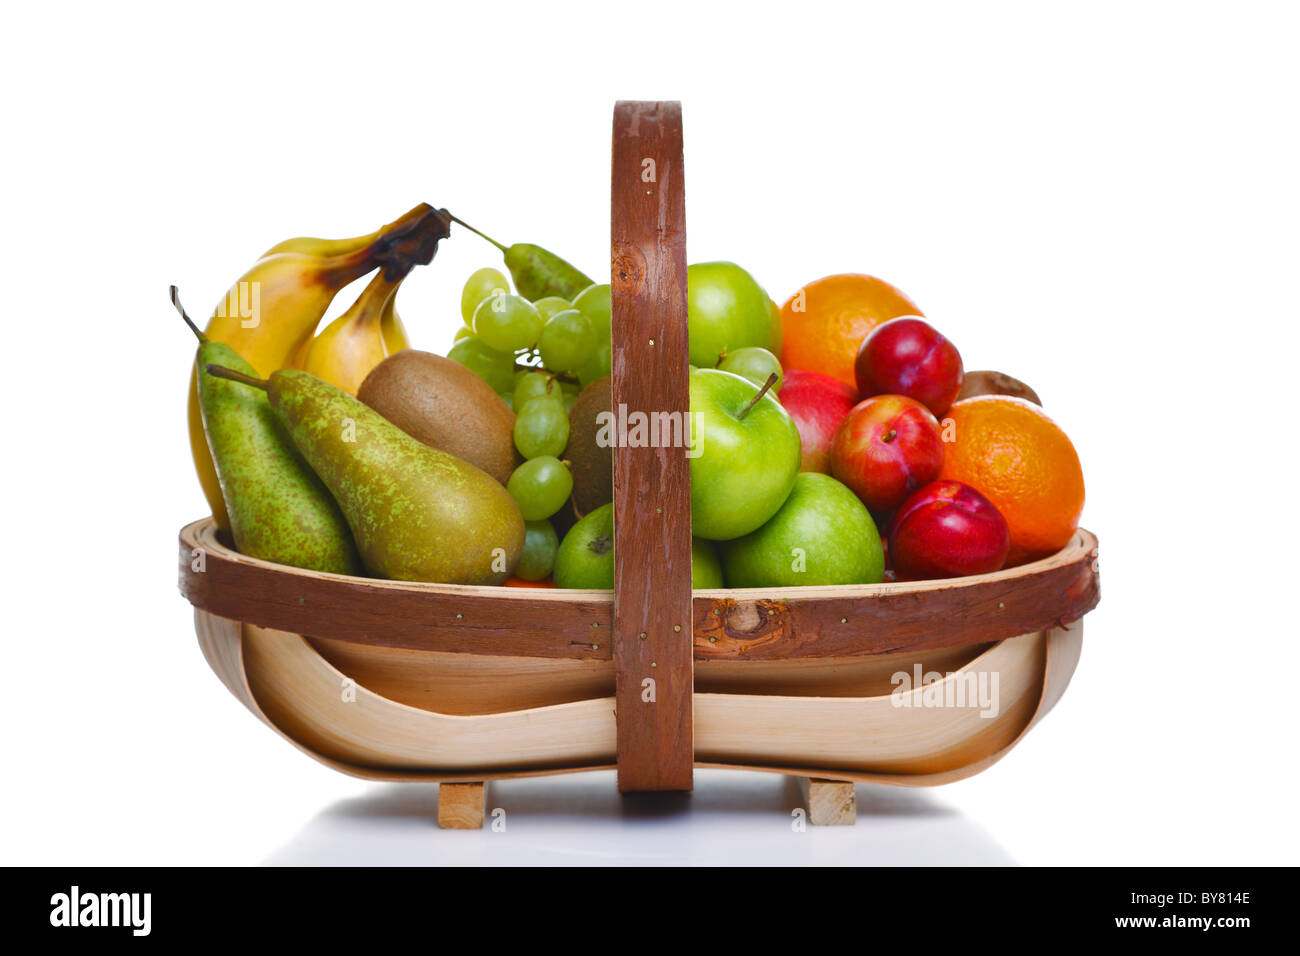 Foto von einem hölzernen Trug voll mit frischem Obst, isoliert auf einem weißen Hintergrund. Stockfoto